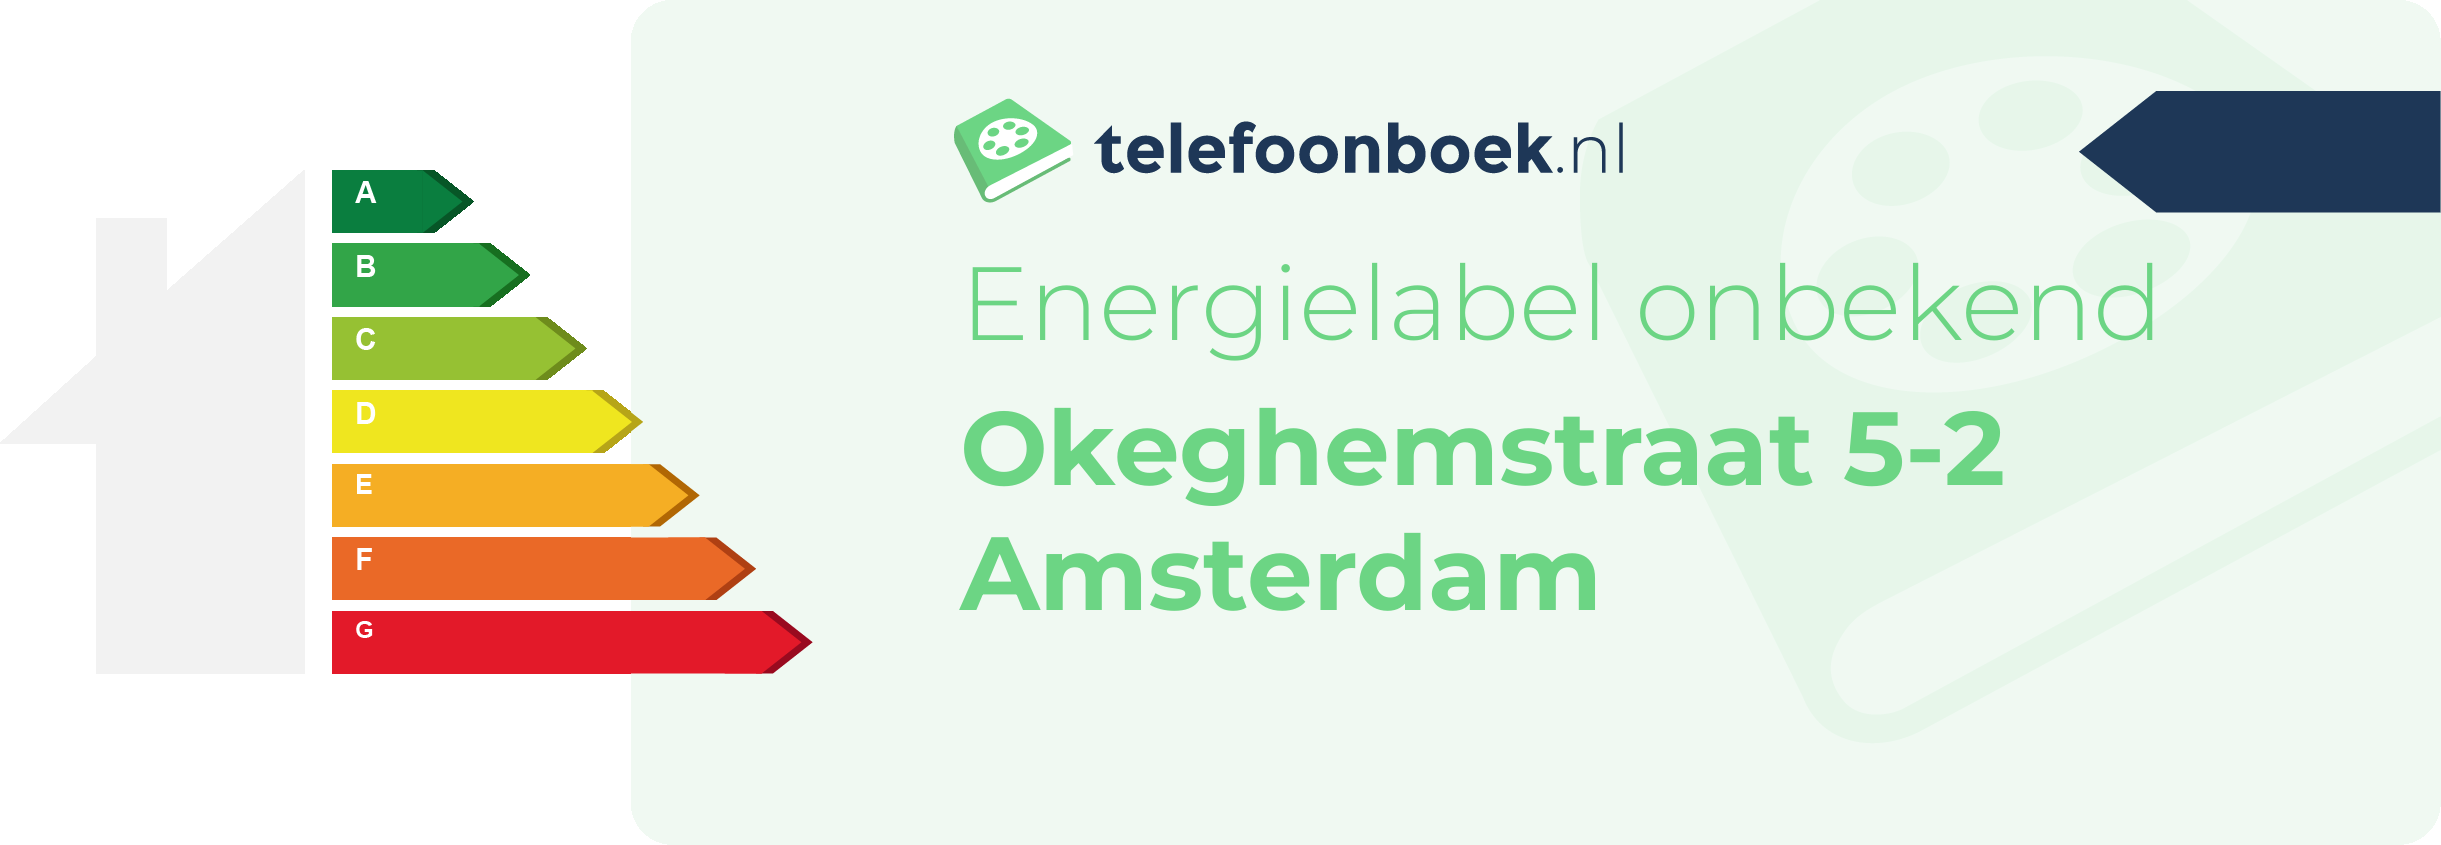 Energielabel Okeghemstraat 5-2 Amsterdam